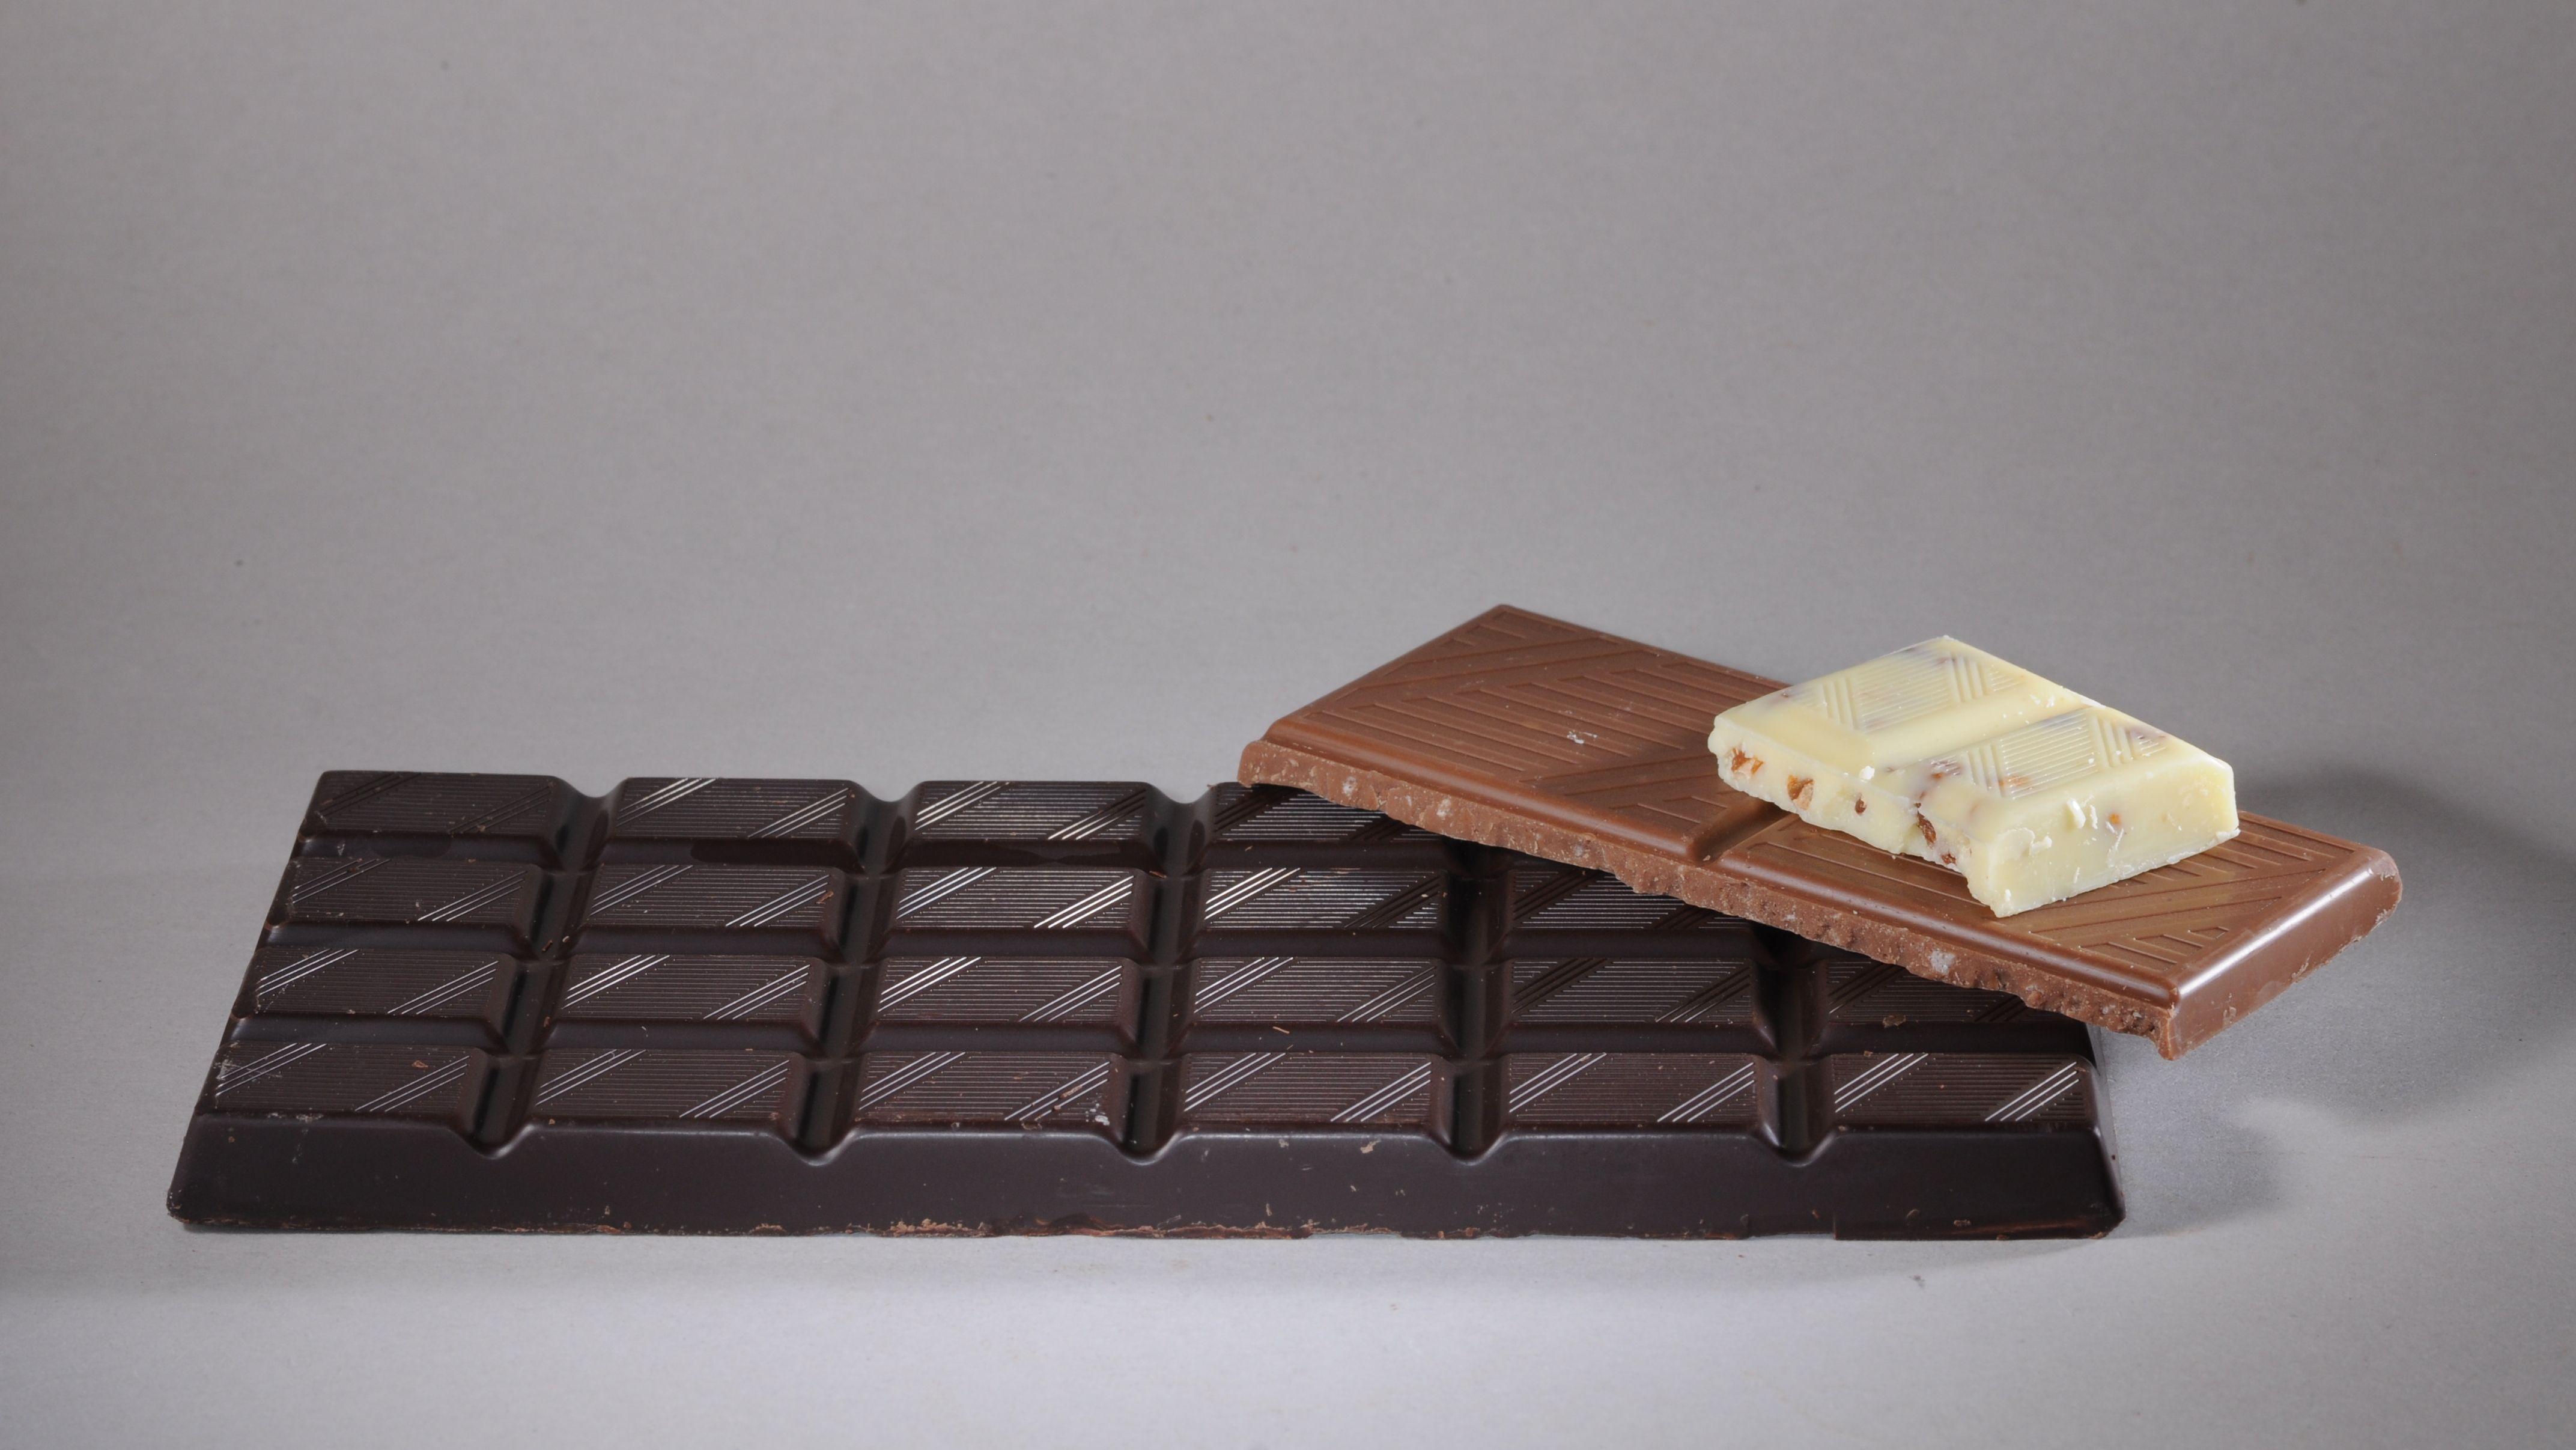 Шоколад купить в махачкале. Плитка шоколада. Обычный шоколад. Швейцарский шоколад плитка. Виды шоколада.